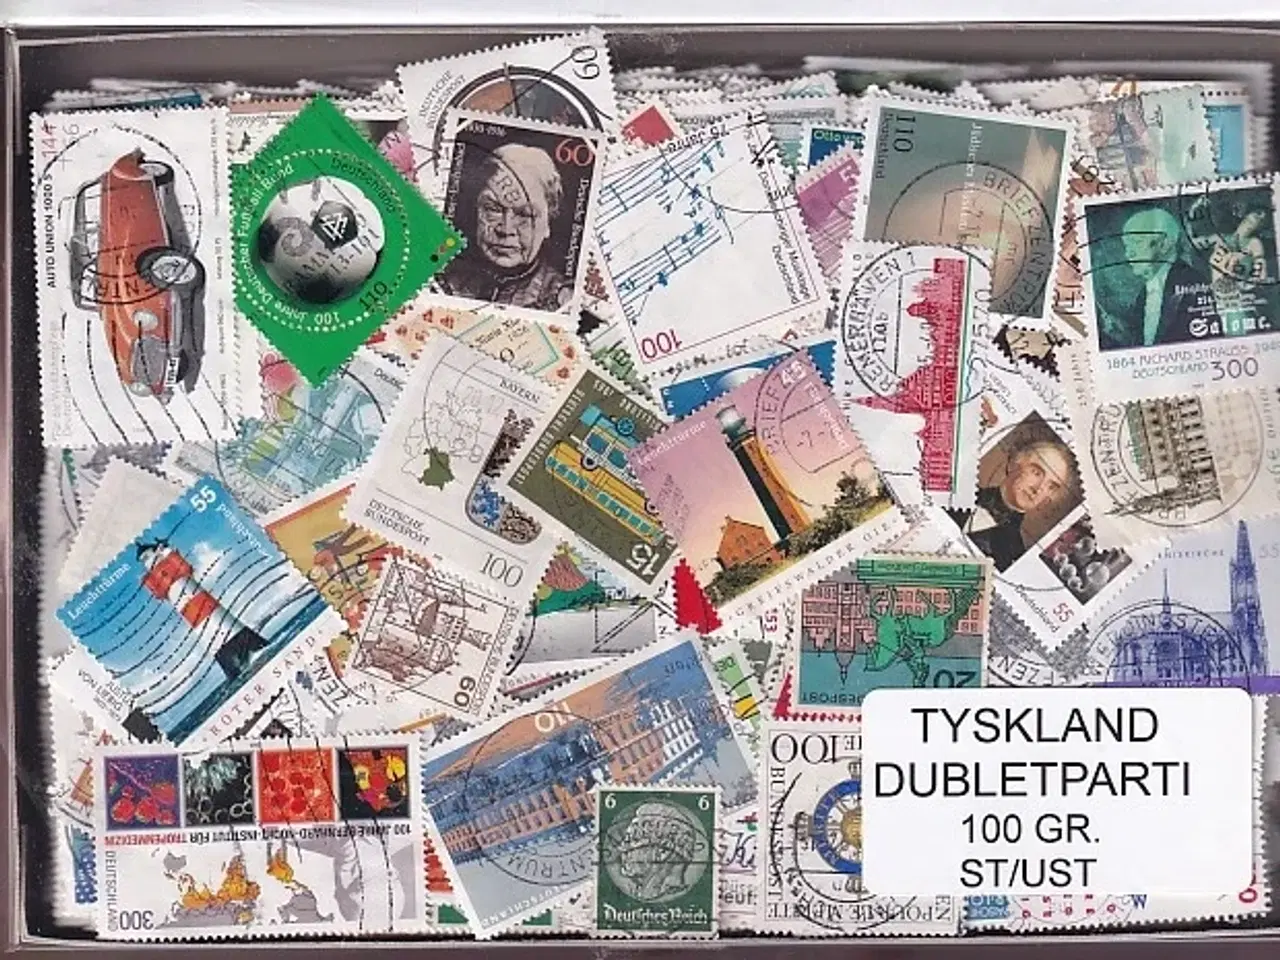 Billede 1 - Tyskland Dubletparti - 100 gram afvaskede frimærker.